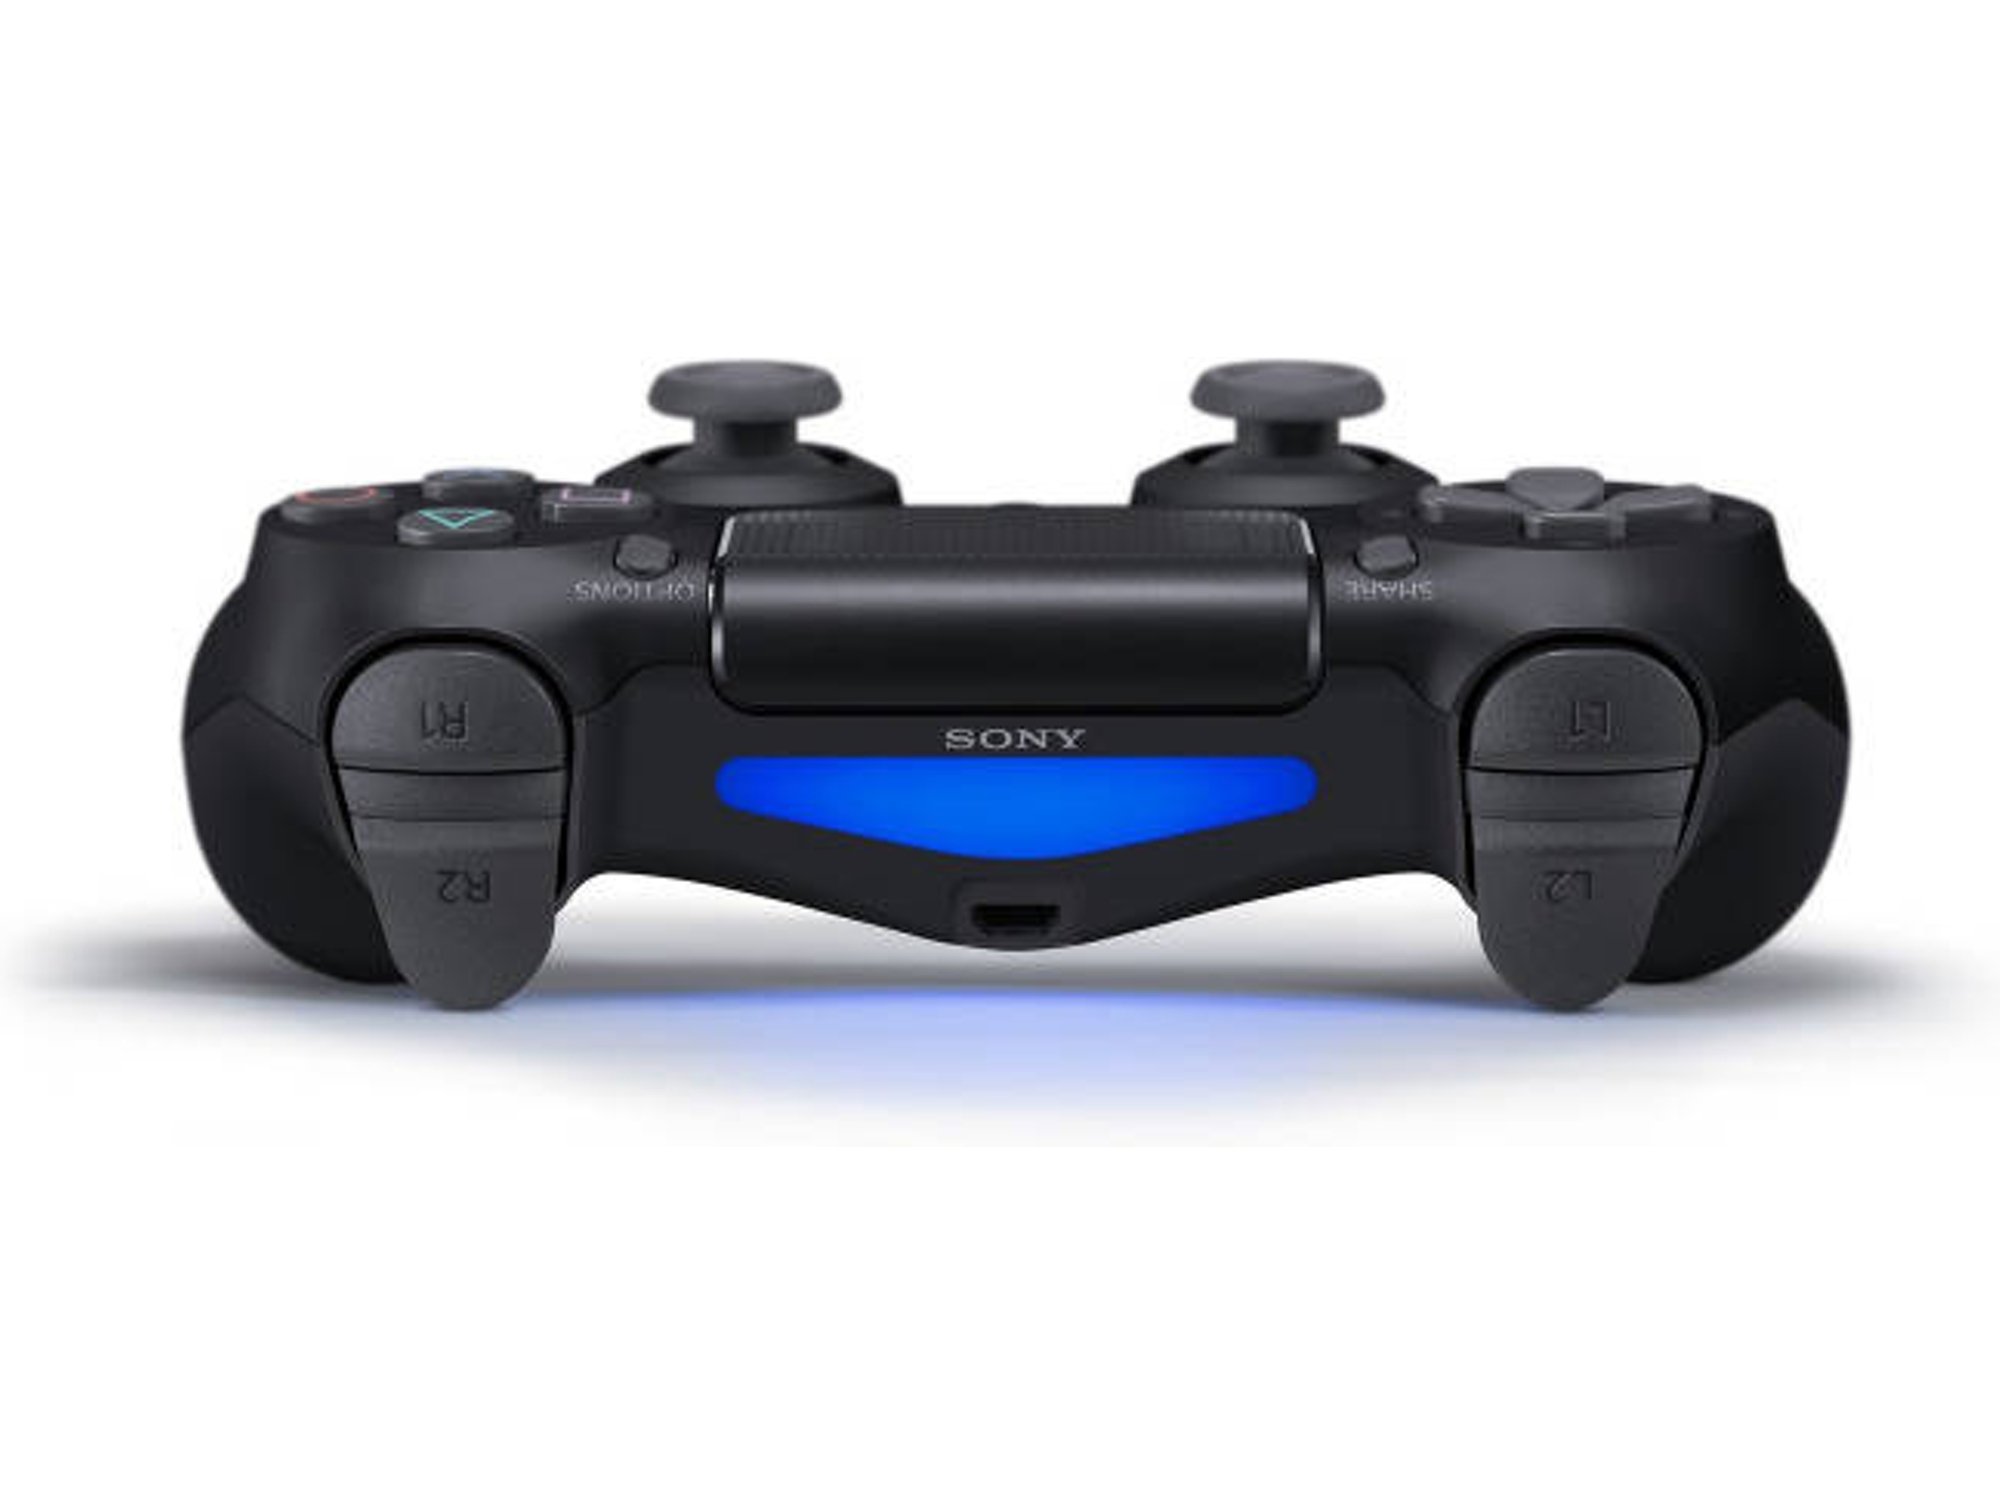 La historia de los botones del mando de PlayStation - Blog de Worten